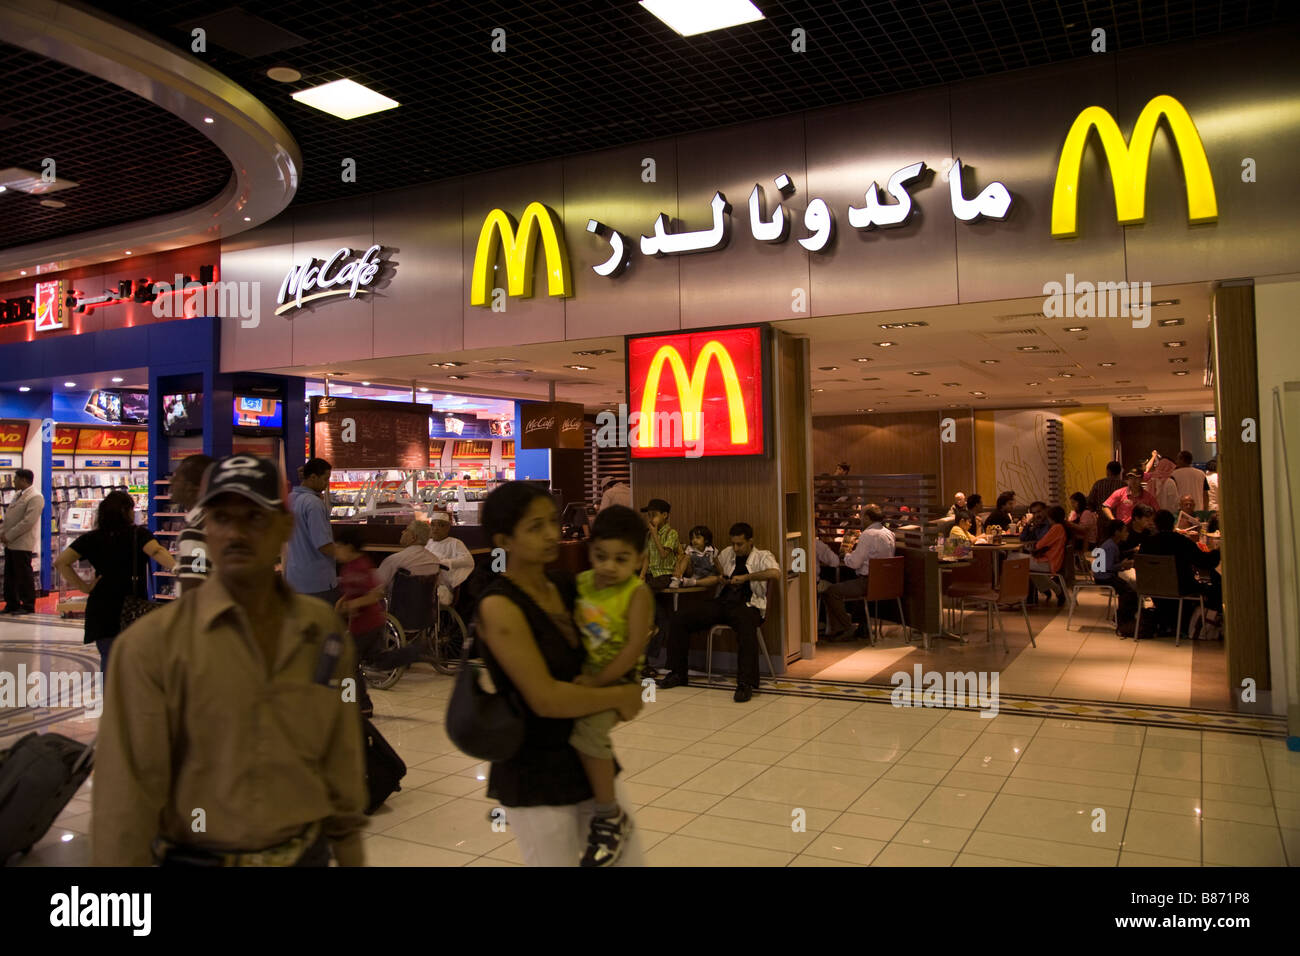 Ristorante McDonald's nella sala partenze dell'aeroporto internazionale di Bahrain. Foto Stock